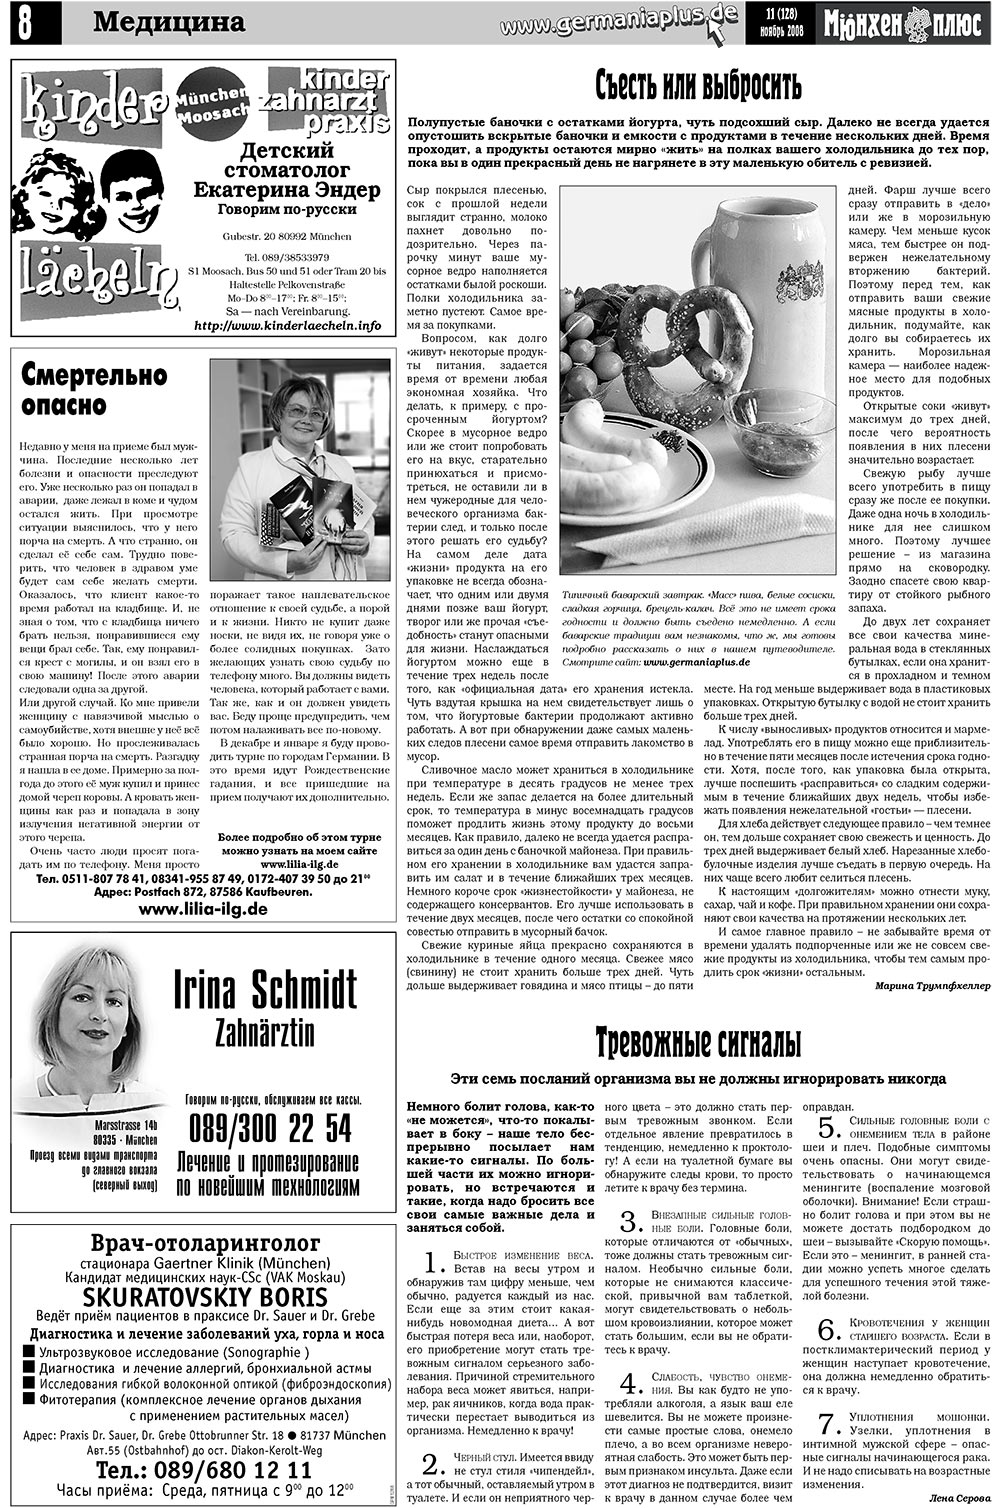 Германия плюс (газета). 2008 год, номер 11, стр. 10